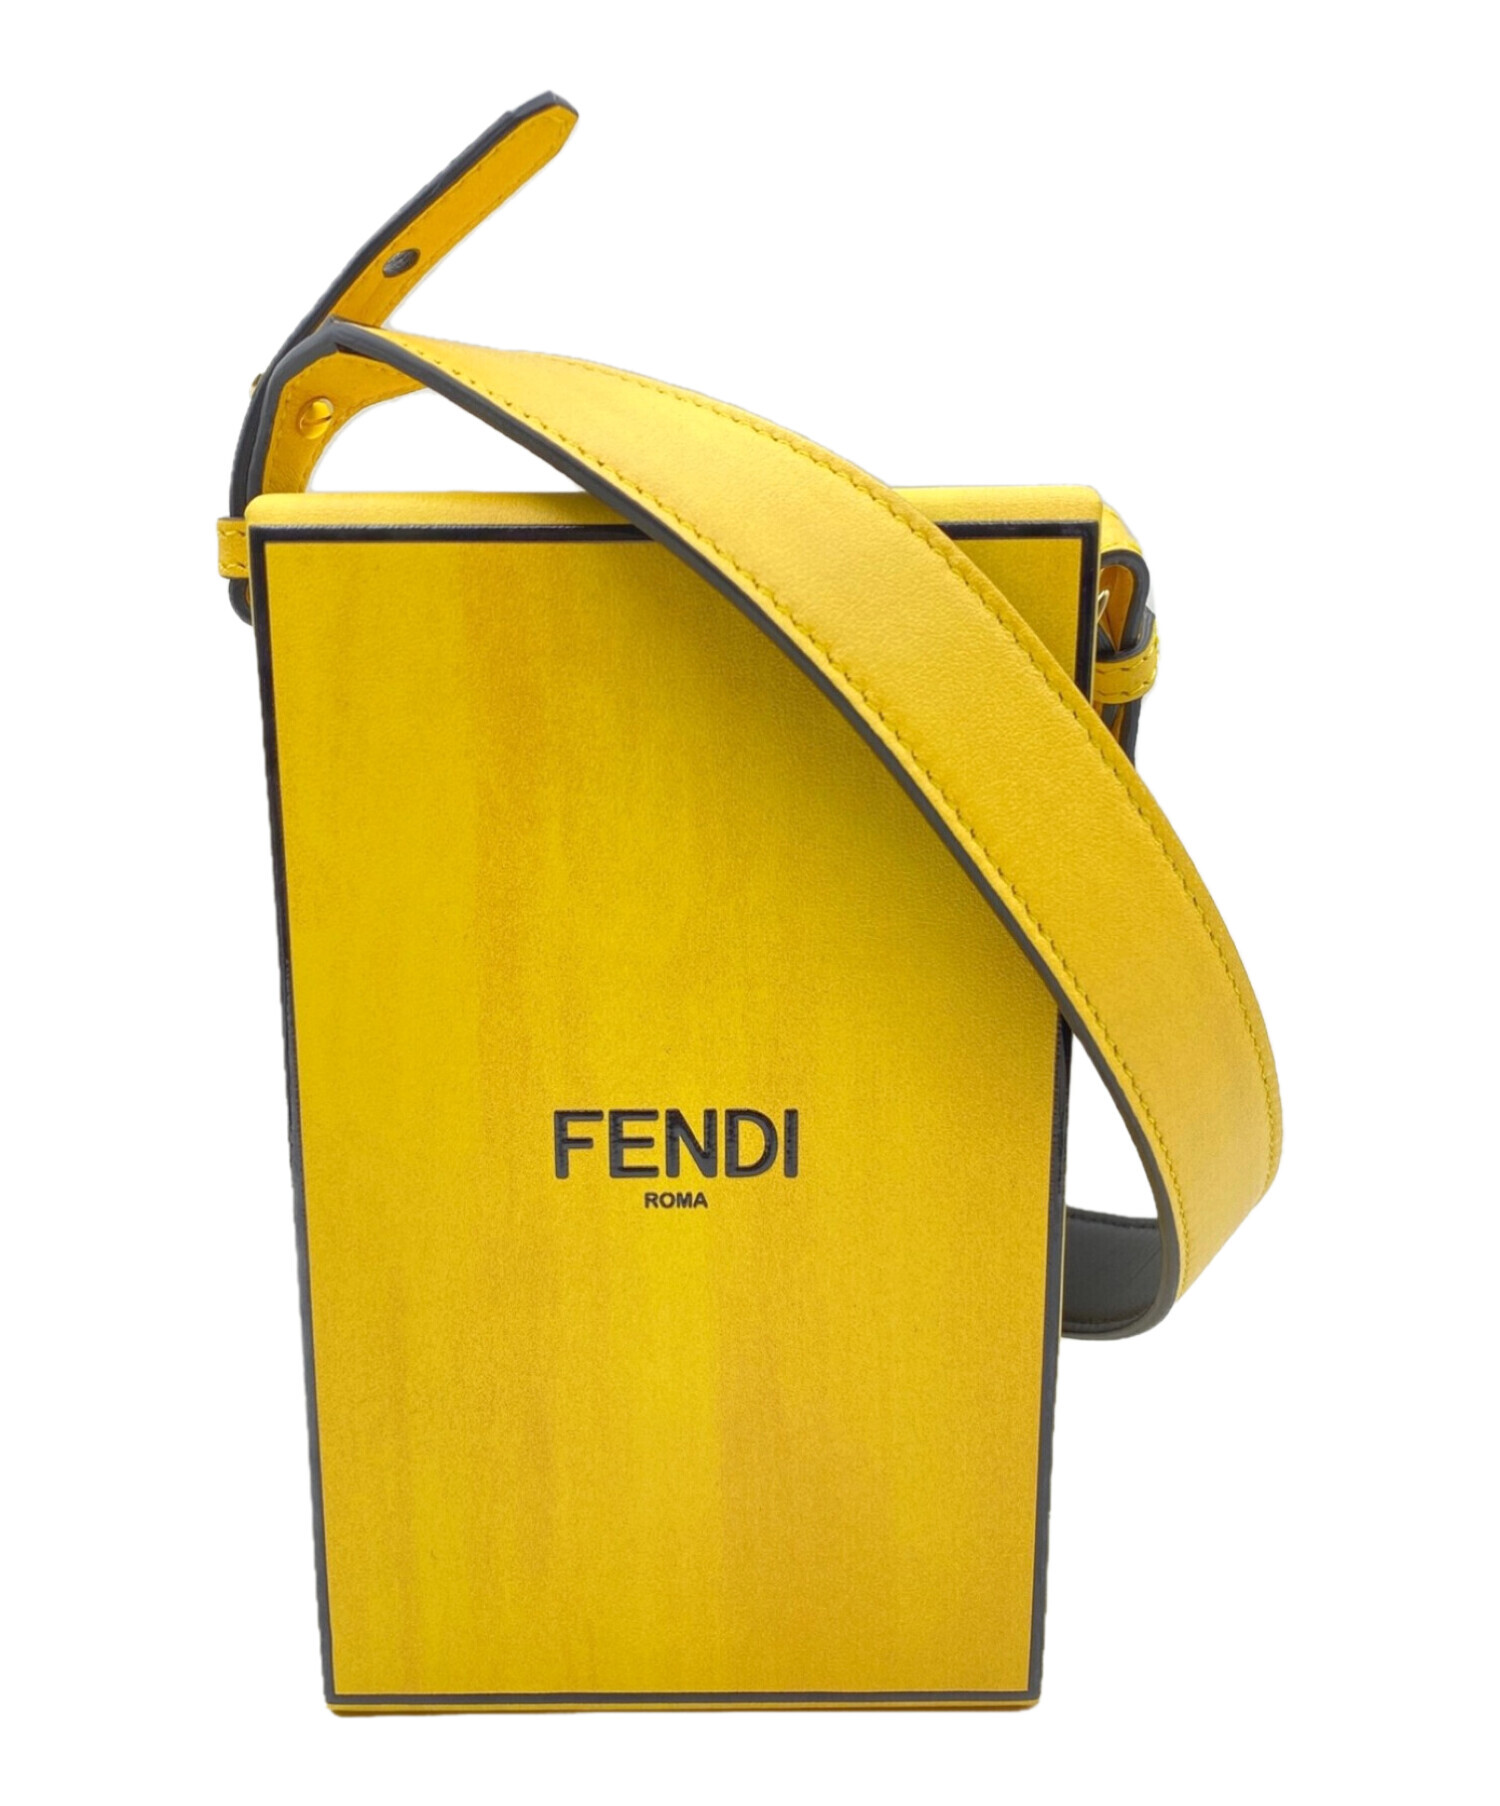 FENDI ボックス - ショップ袋